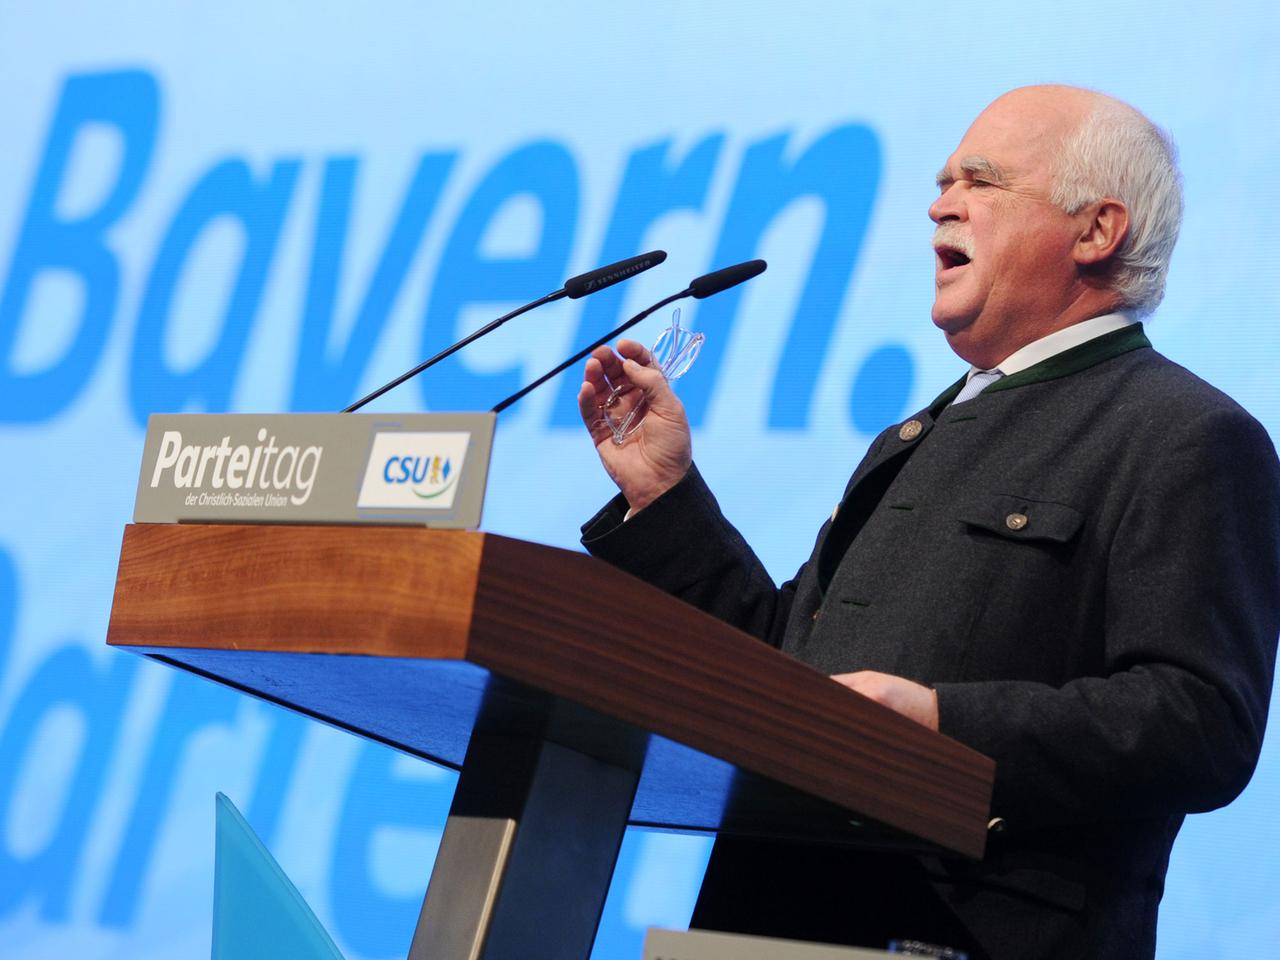 Der Kandidat für das Amt des Vize-Parteivorsitzenden, Peter Gauweiler (CSU), spricht am 23.11.2013 in München (Bayern) beim Parteitag der CSU.